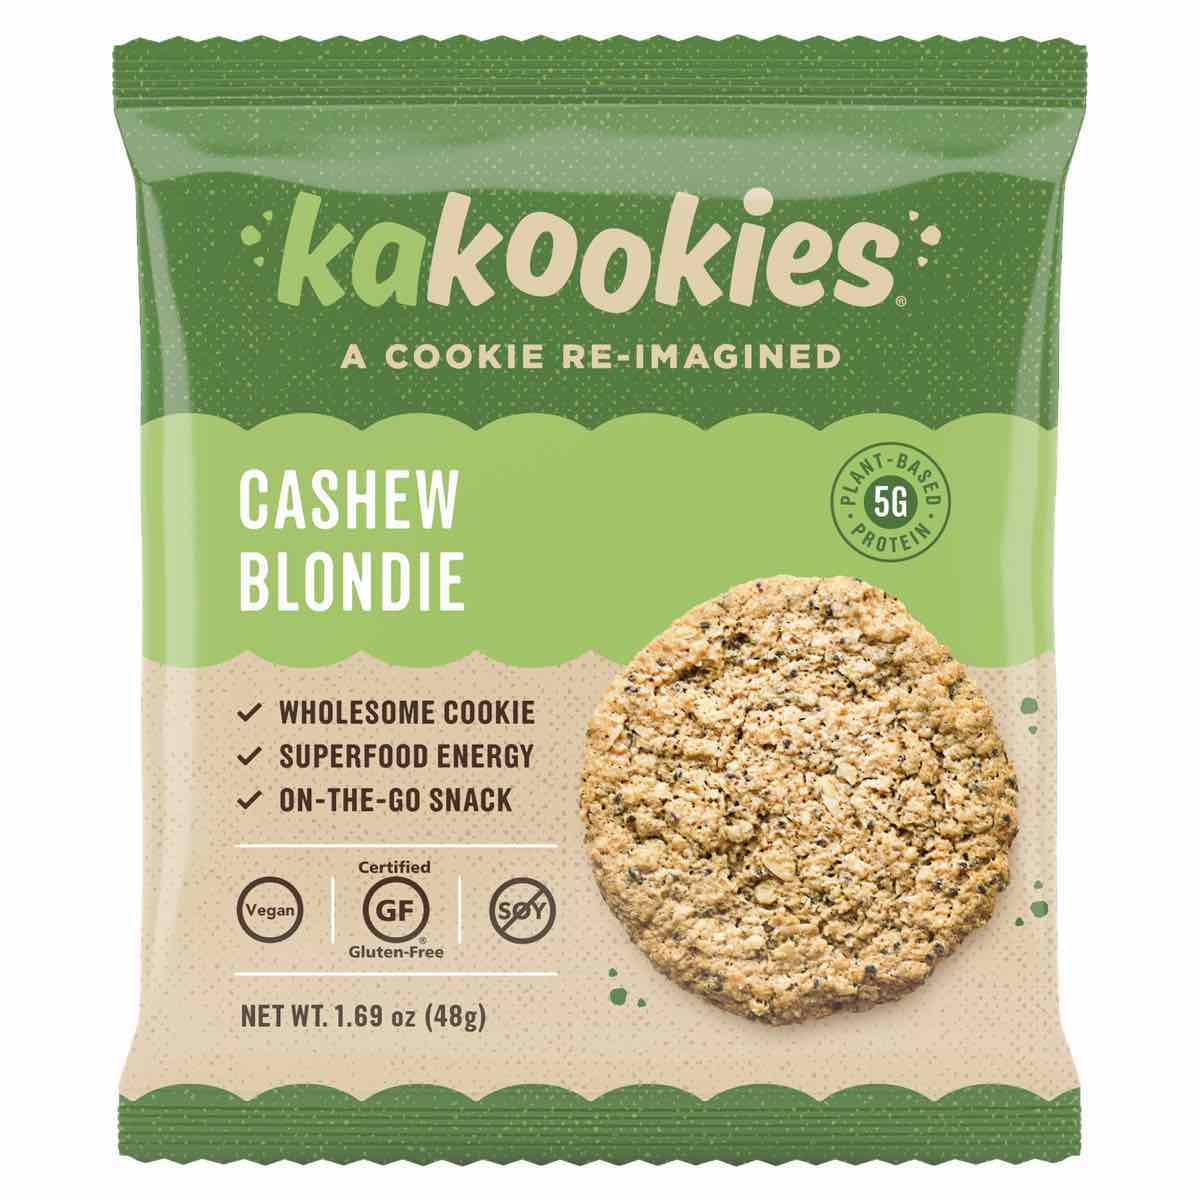 Cashew Blondie energy cookies